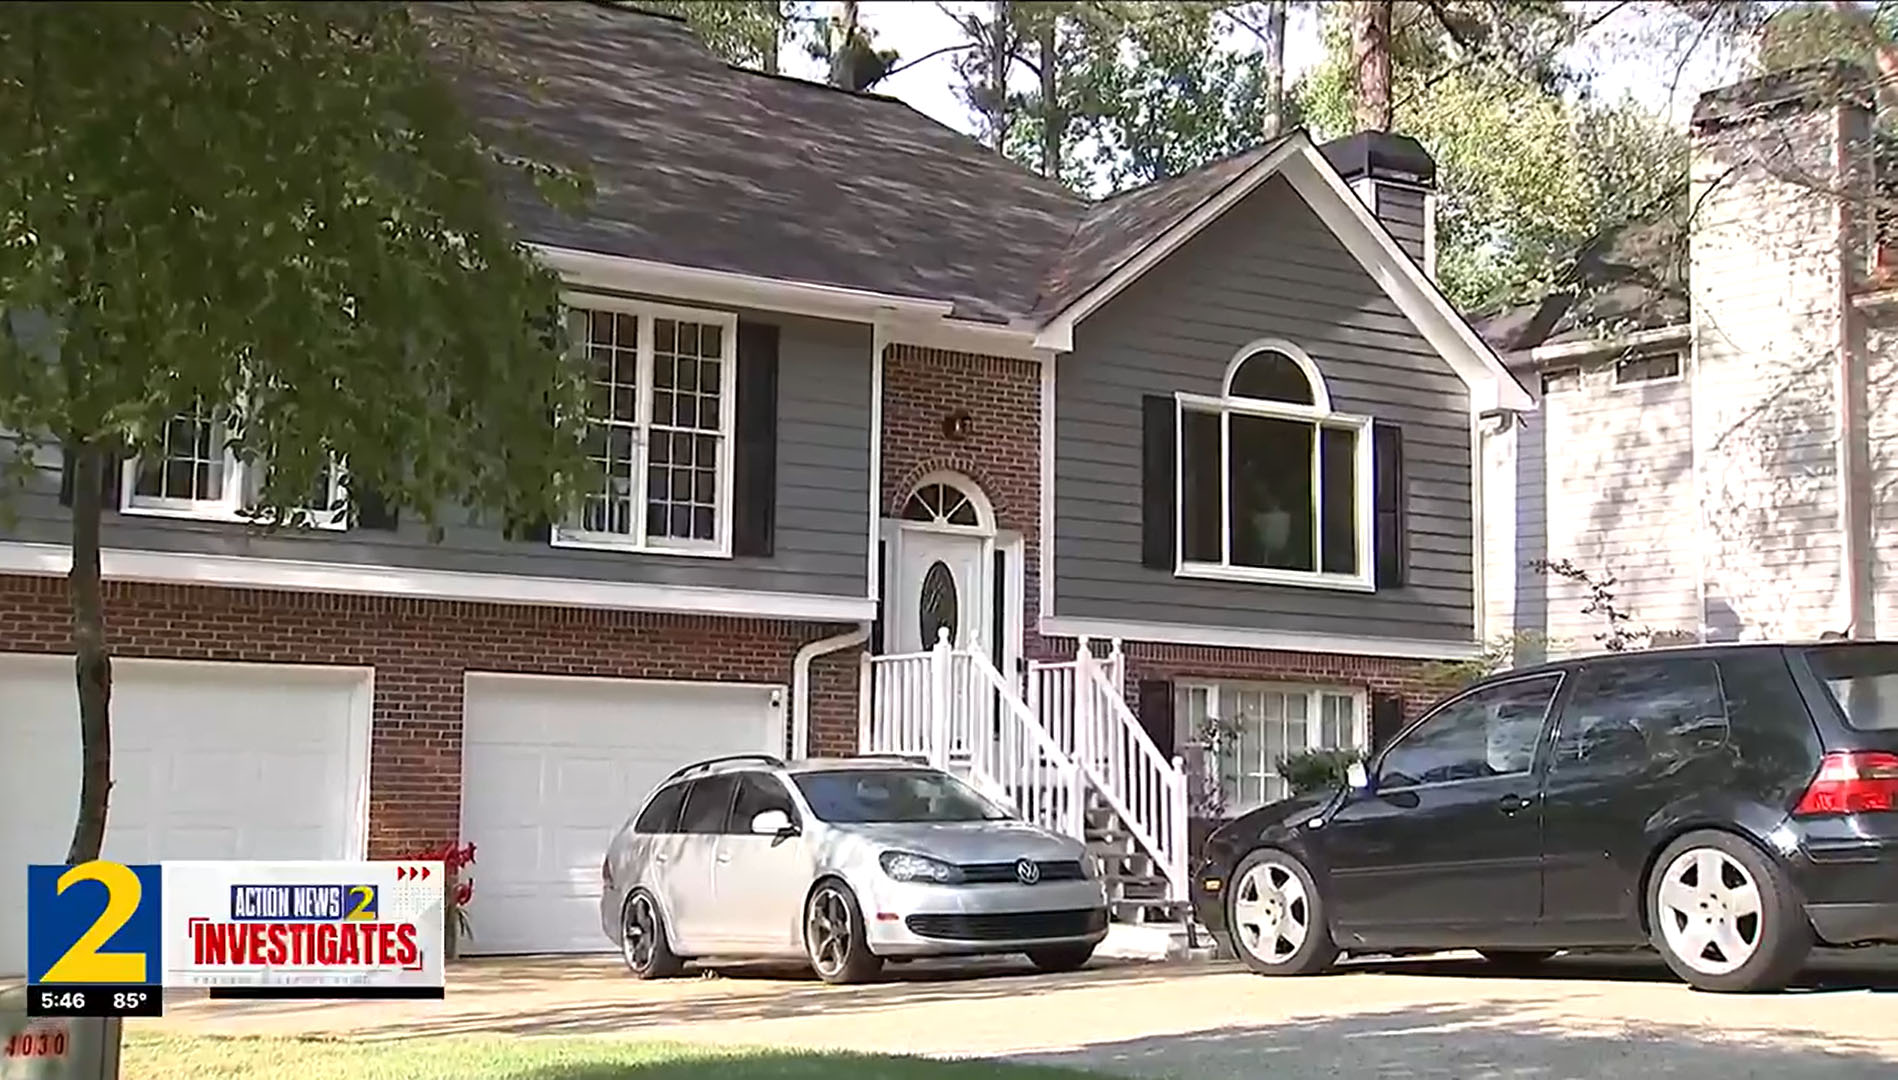 Das Haus des 18 Jahre alten Bewohners wurde bei Zwangsvollstreckung für weniger als den durchschnittlichen Benzinpreis in den USA verkauft